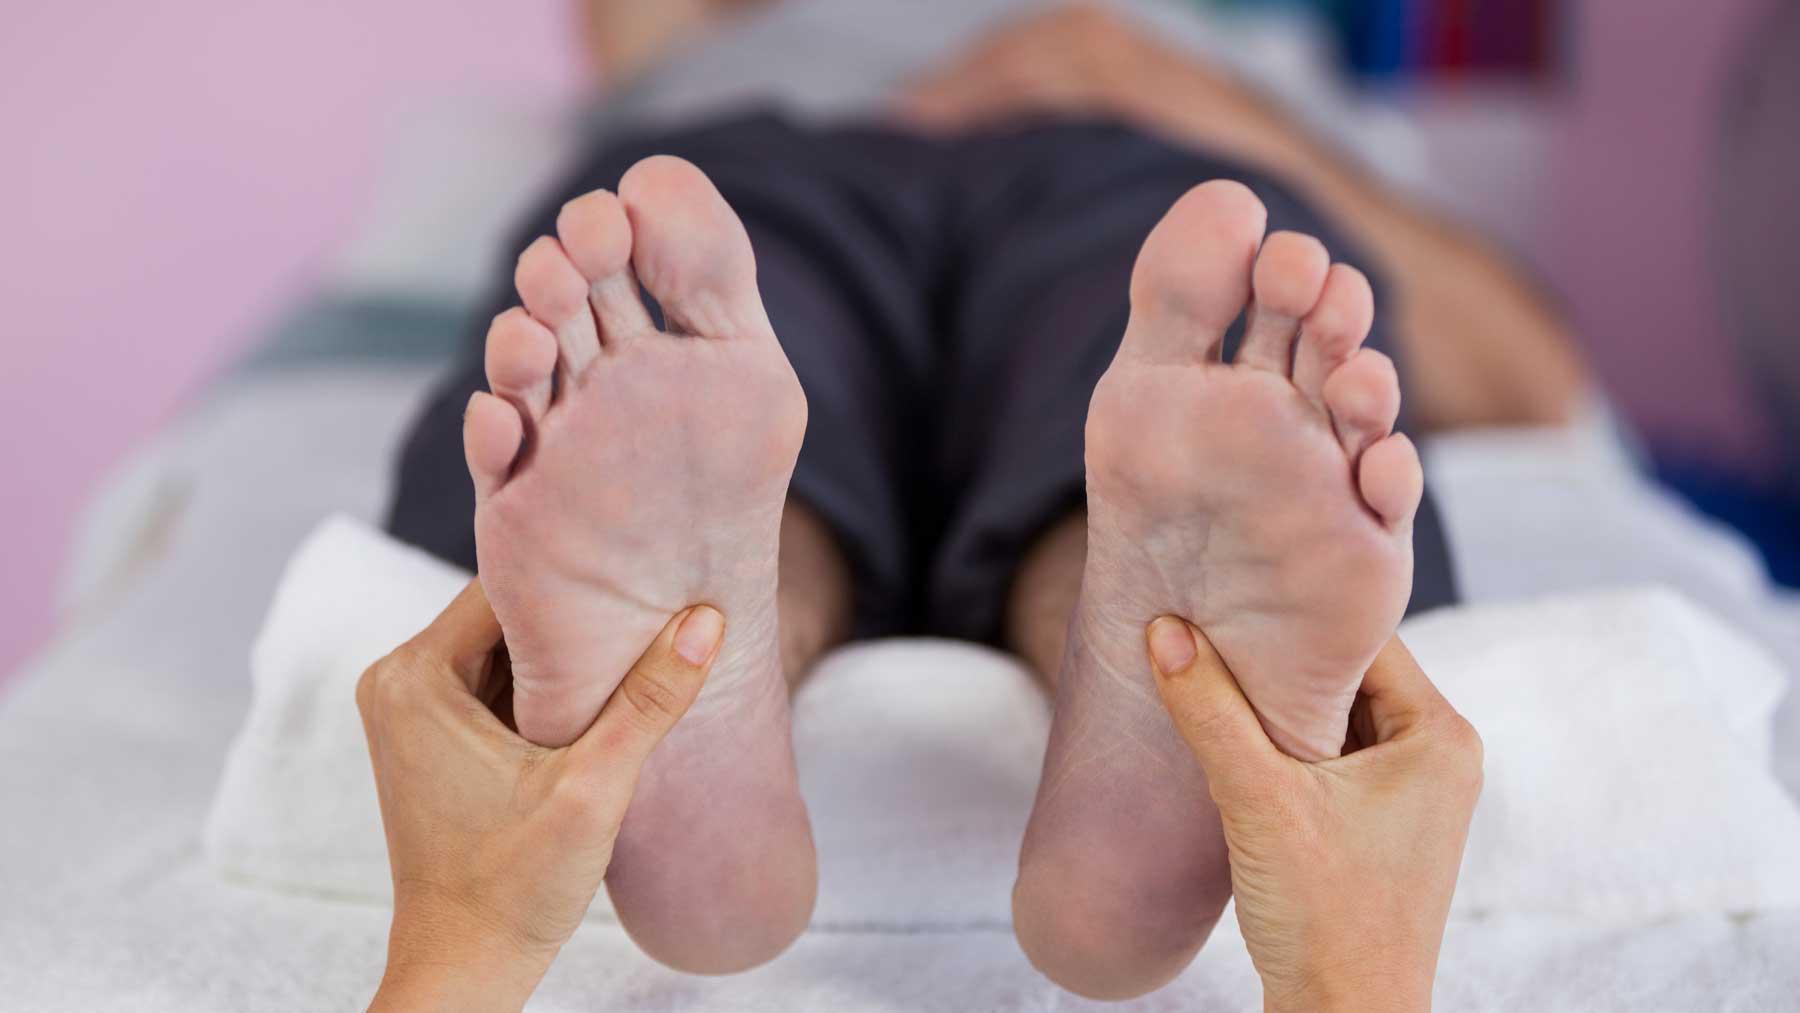 एक गंभीर रोग के संकेत होते है पैरों में अल्सर होना